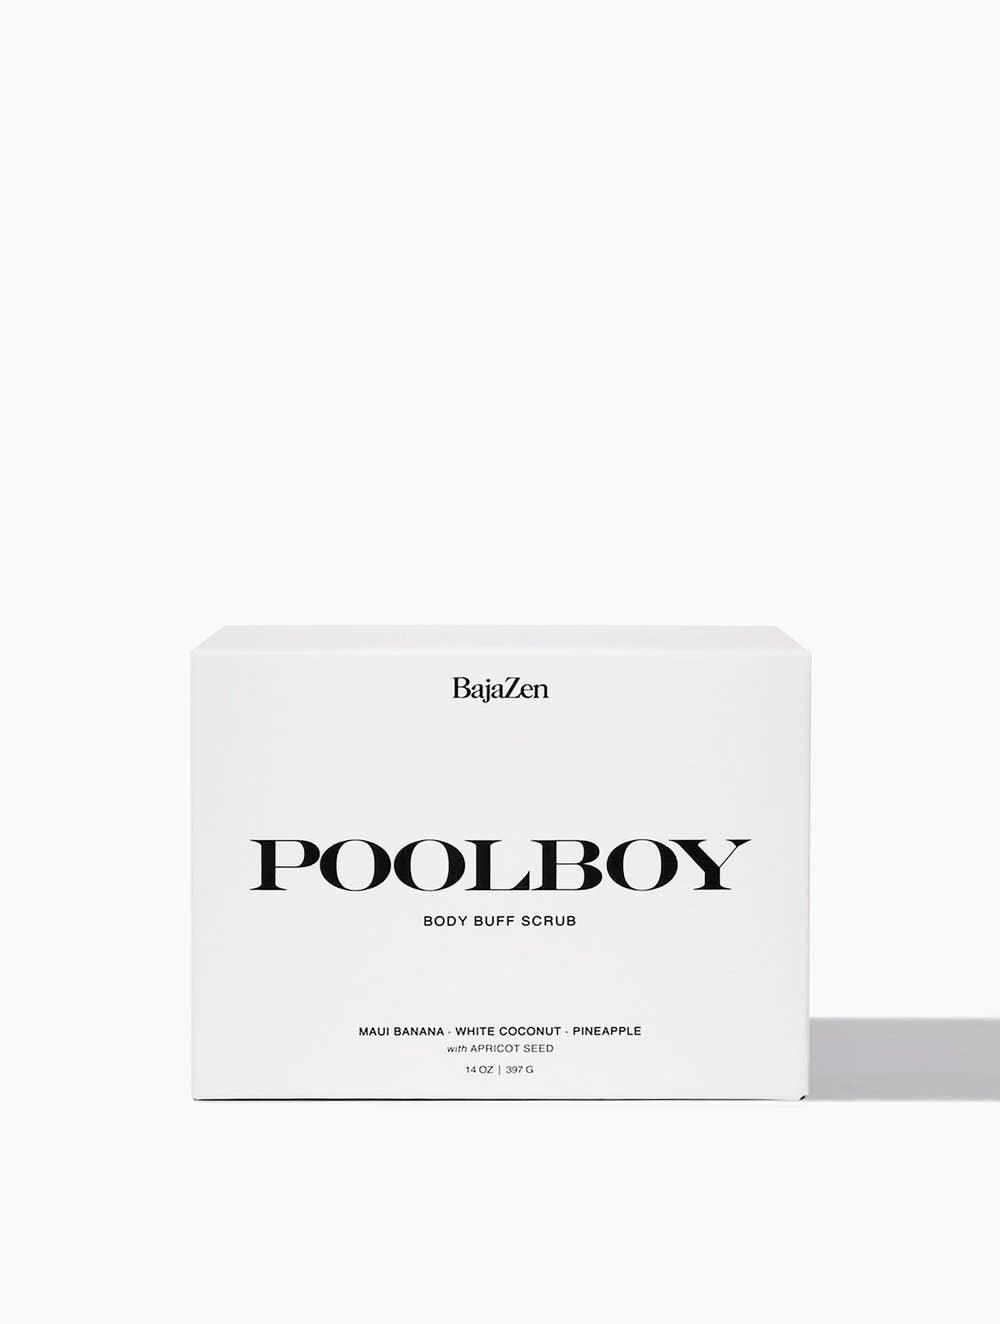 Poolboy Body Buff Scrub - Haven